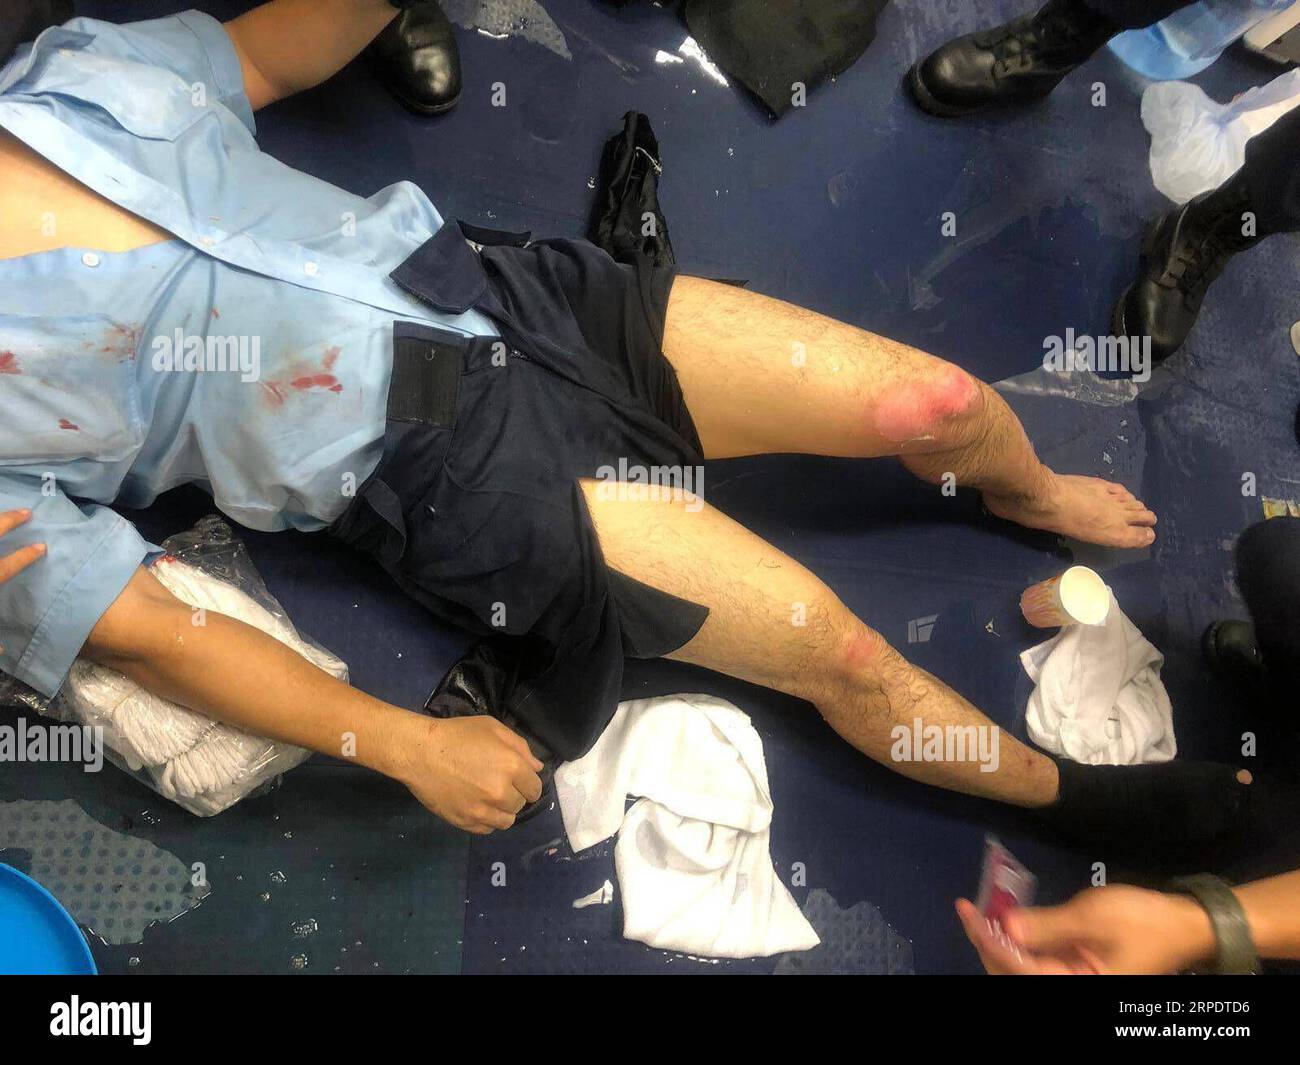 News Bilder des Tages (190812) -- HONGKONG, 12. August 2019 -- Foto vom 11. August 2019 zeigt einen verletzten Polizeibeamten in Hongkong. Ein Polizist wurde schwer verletzt, als am Sonntagabend an mehreren Orten in Hongkong Benzinbomben auf Polizeibeamte geworfen wurden. CHINA-HONG KONG-POLIZIST-VERLETZT WUXXIAOCHU PUBLICATIONXNOTXINXCHN Stockfoto